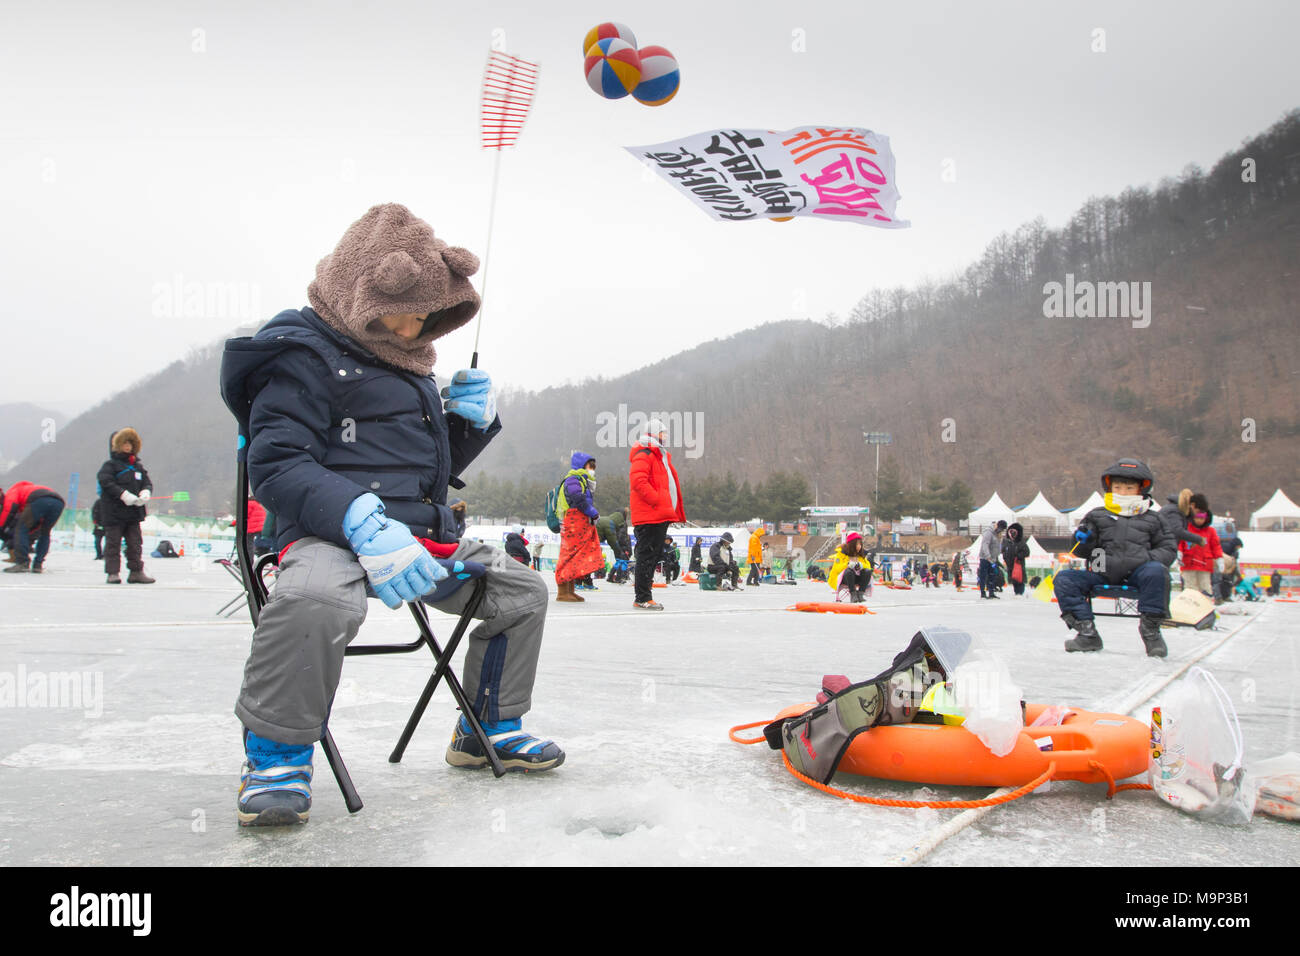 Ein Junge wartet auf ein Loch im Eis im Eis angeln Festival an Hwacheon Sancheoneo in der Region Gangwon-do in Südkorea. Die Hwacheon Sancheoneo Ice Festival ist eine Tradition für die Menschen in Korea. Jedes Jahr im Januar Menschenmassen versammeln sich auf dem zugefrorenen Fluss der Kälte und dem Schnee des Winters zu feiern. Hauptattraktion ist Eisfischen. Jung und Alt warten geduldig auf ein kleines Loch im Eis für eine Forelle zu beißen. In zelten Sie können den Fisch vom Grill, nach dem sie gegessen werden. Unter anderem sind Rodeln und Eislaufen. Die in der Nähe Pyeongchang Region wird Gastgeber der Winter Stockfoto